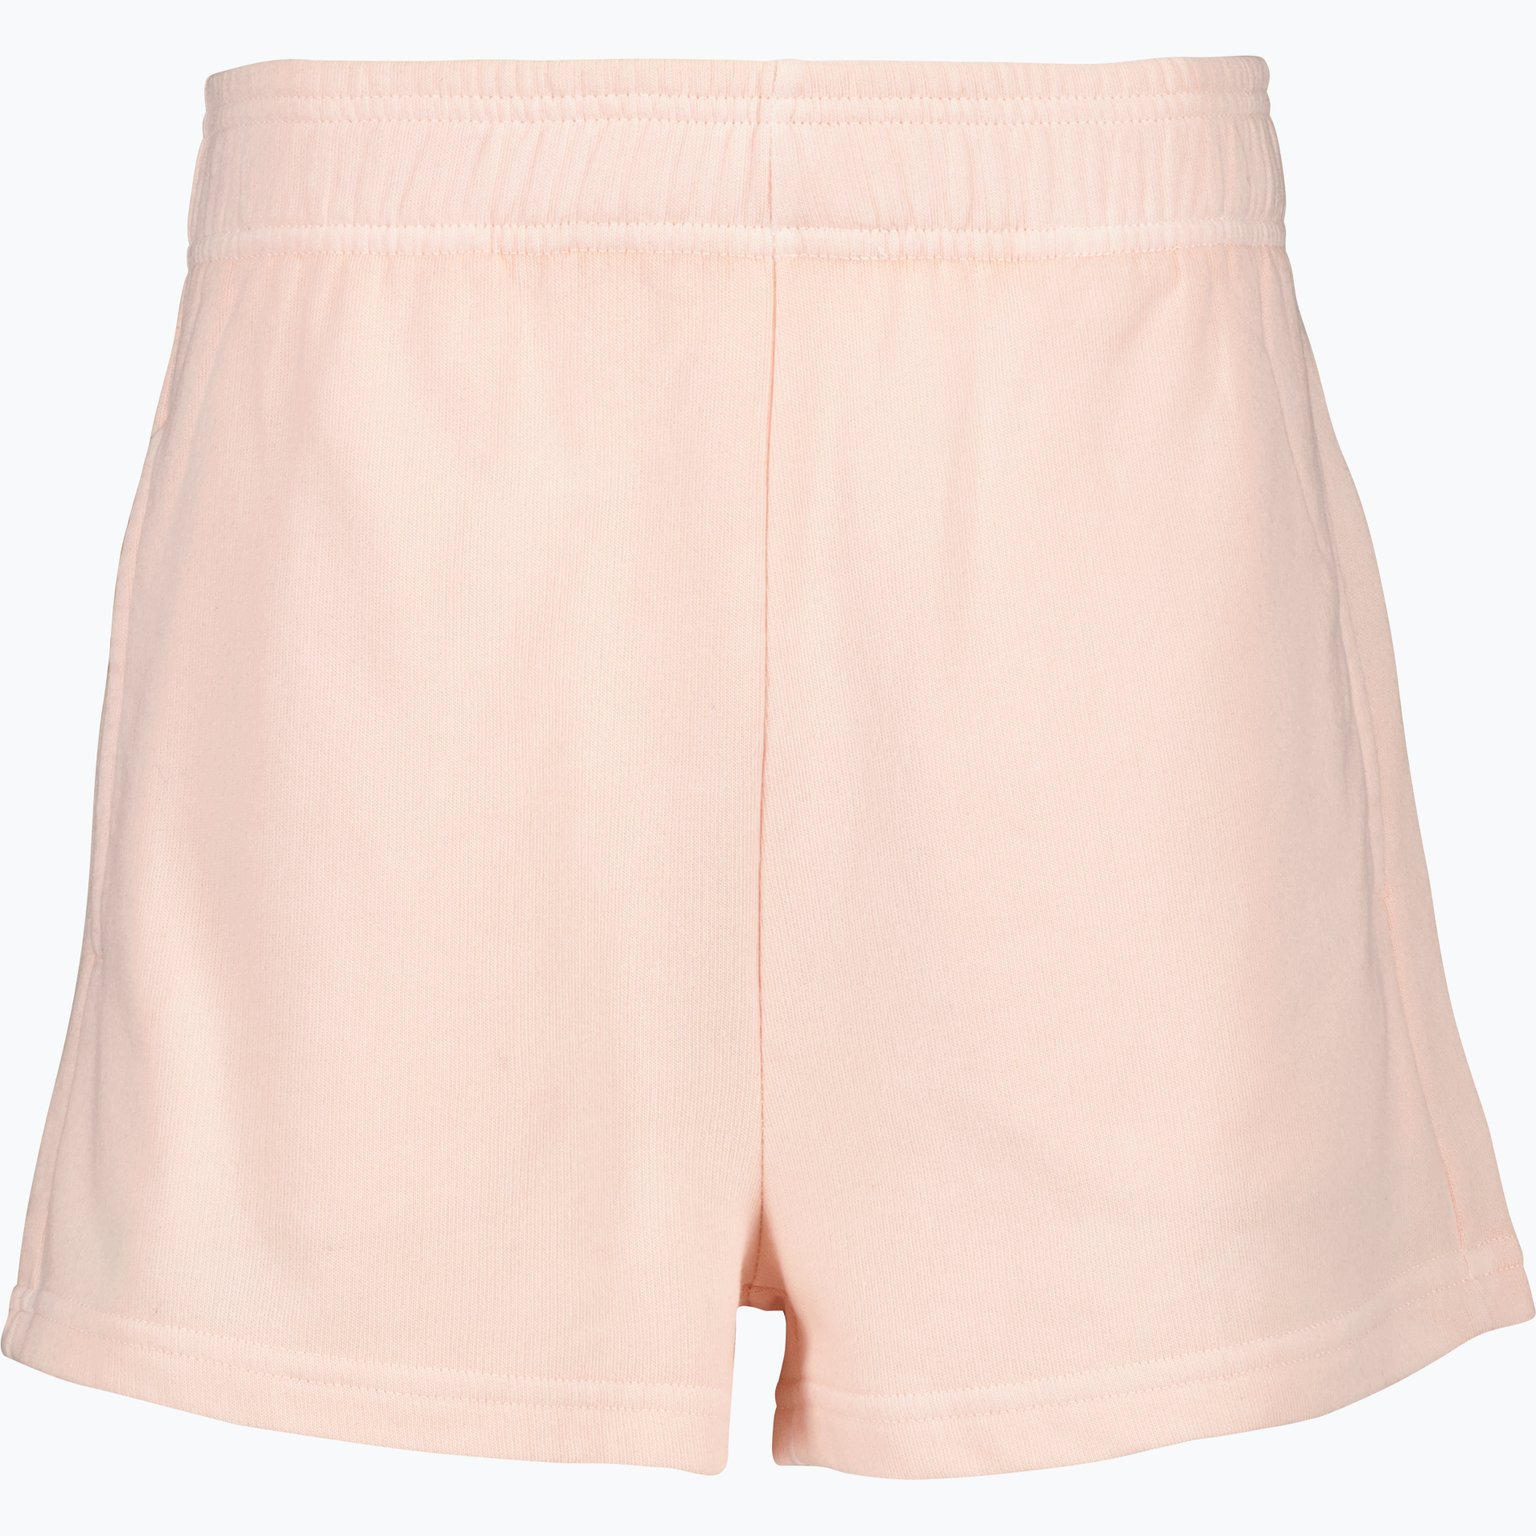 Peachy JR shorts